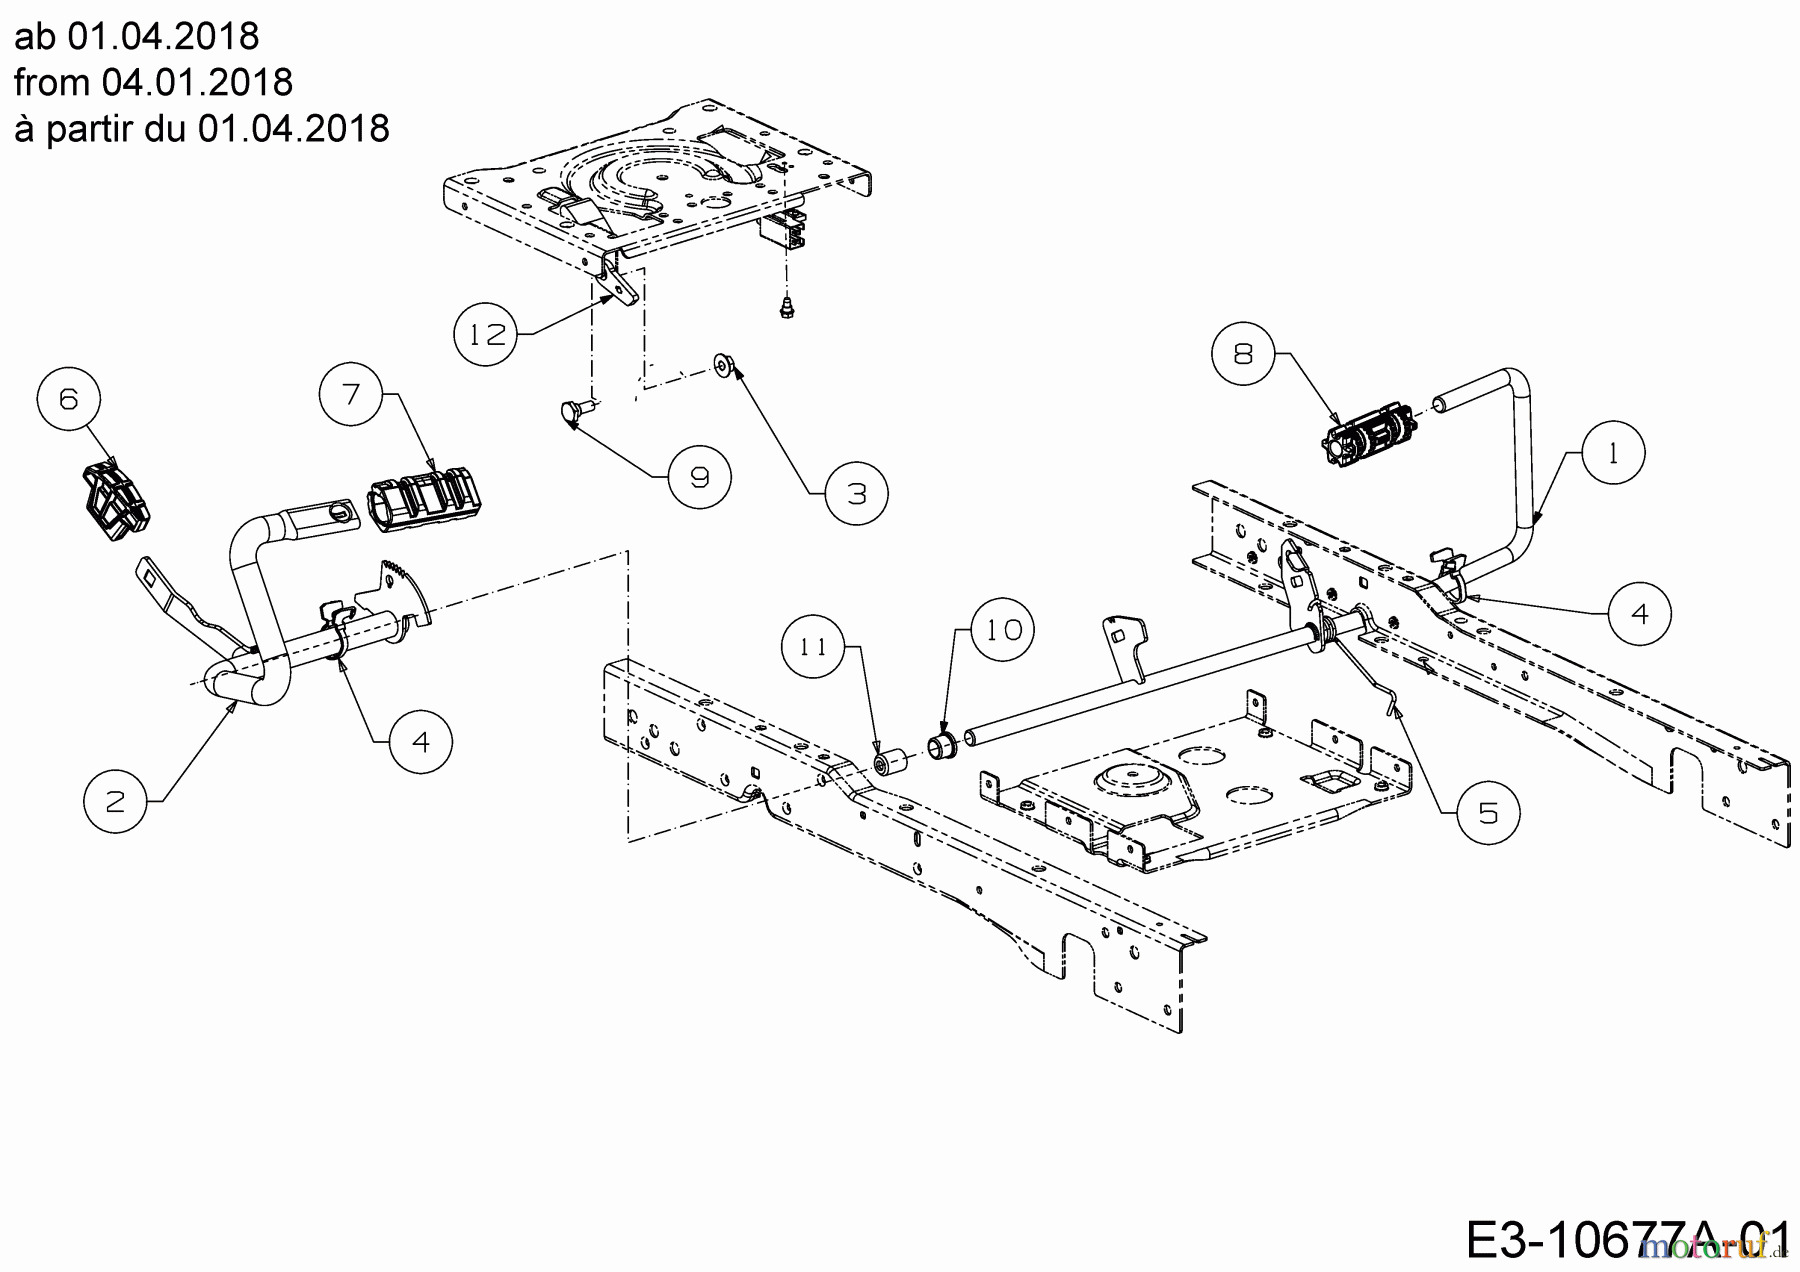  Cub Cadet Lawn tractors XT1 OS107 13A8A1CS603  (2020) Pedals from 04.01.2018